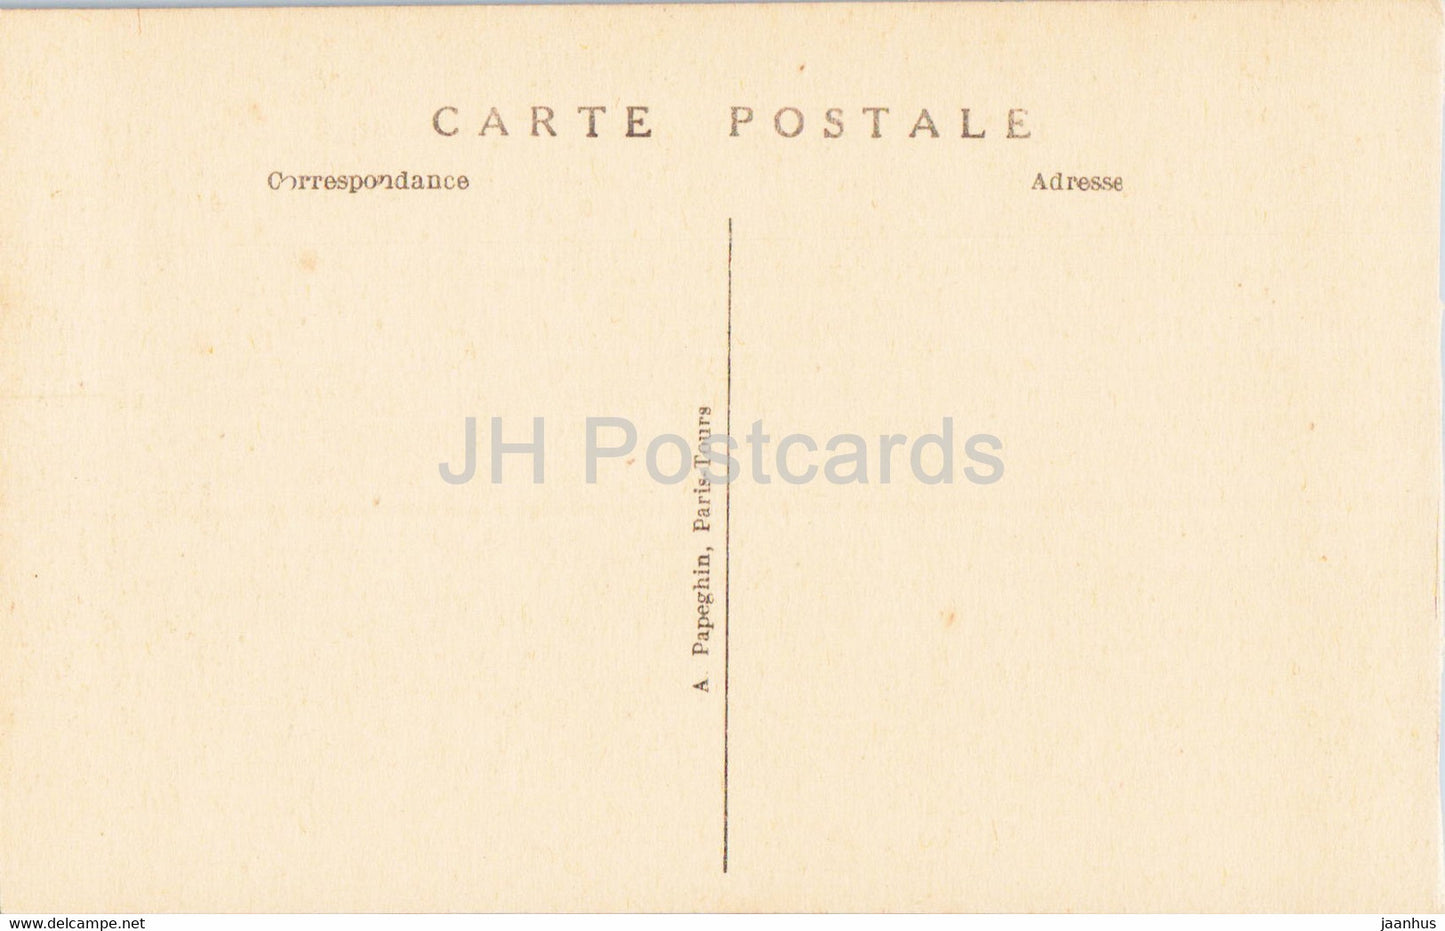 Versailles - Le Parc - Le Bassin du Char d'Apollon - 17 - old postcard - France - unused